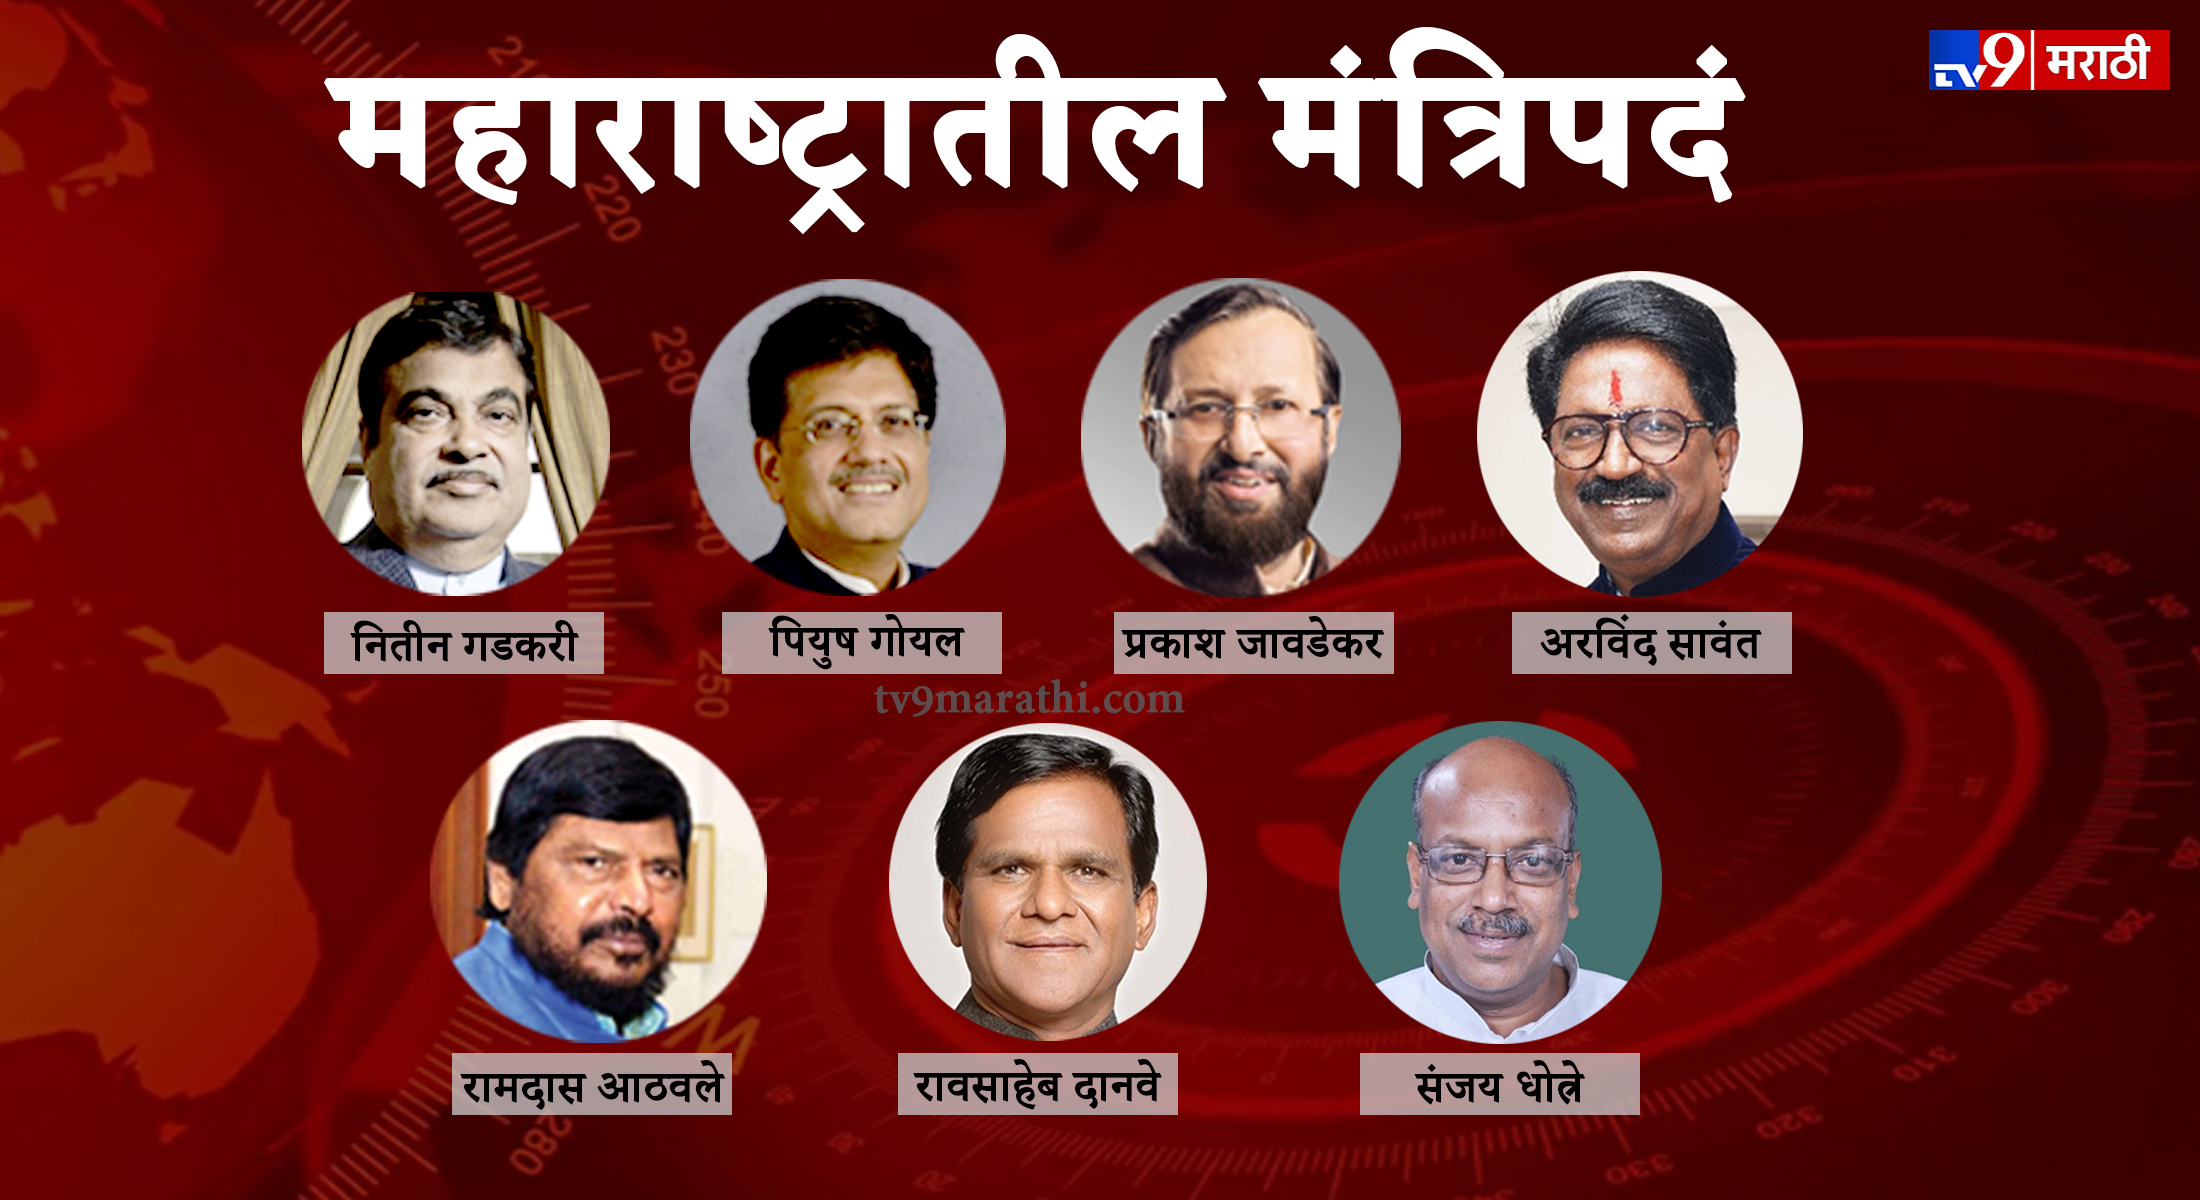 महाराष्ट्रातील 7 मंत्र्यांकडे कोणतं मंत्रालय?